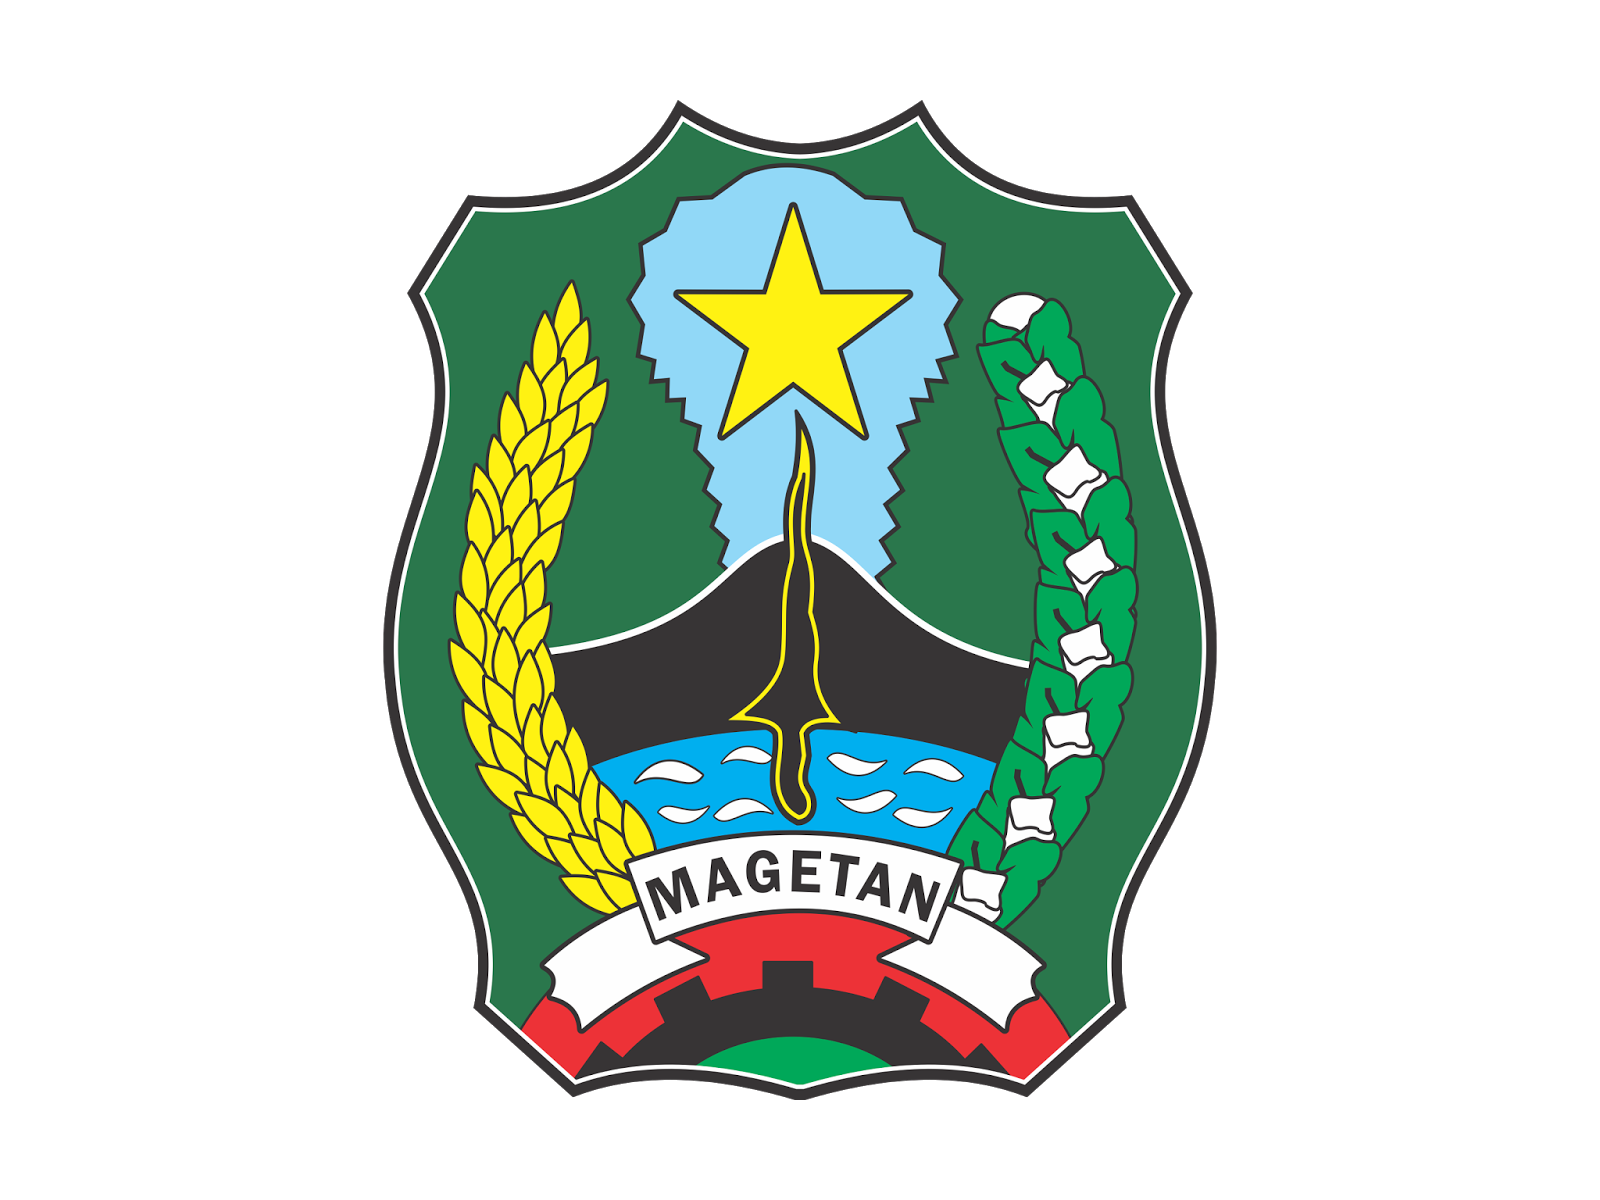 Pemerintahan Kabupaten Magetan